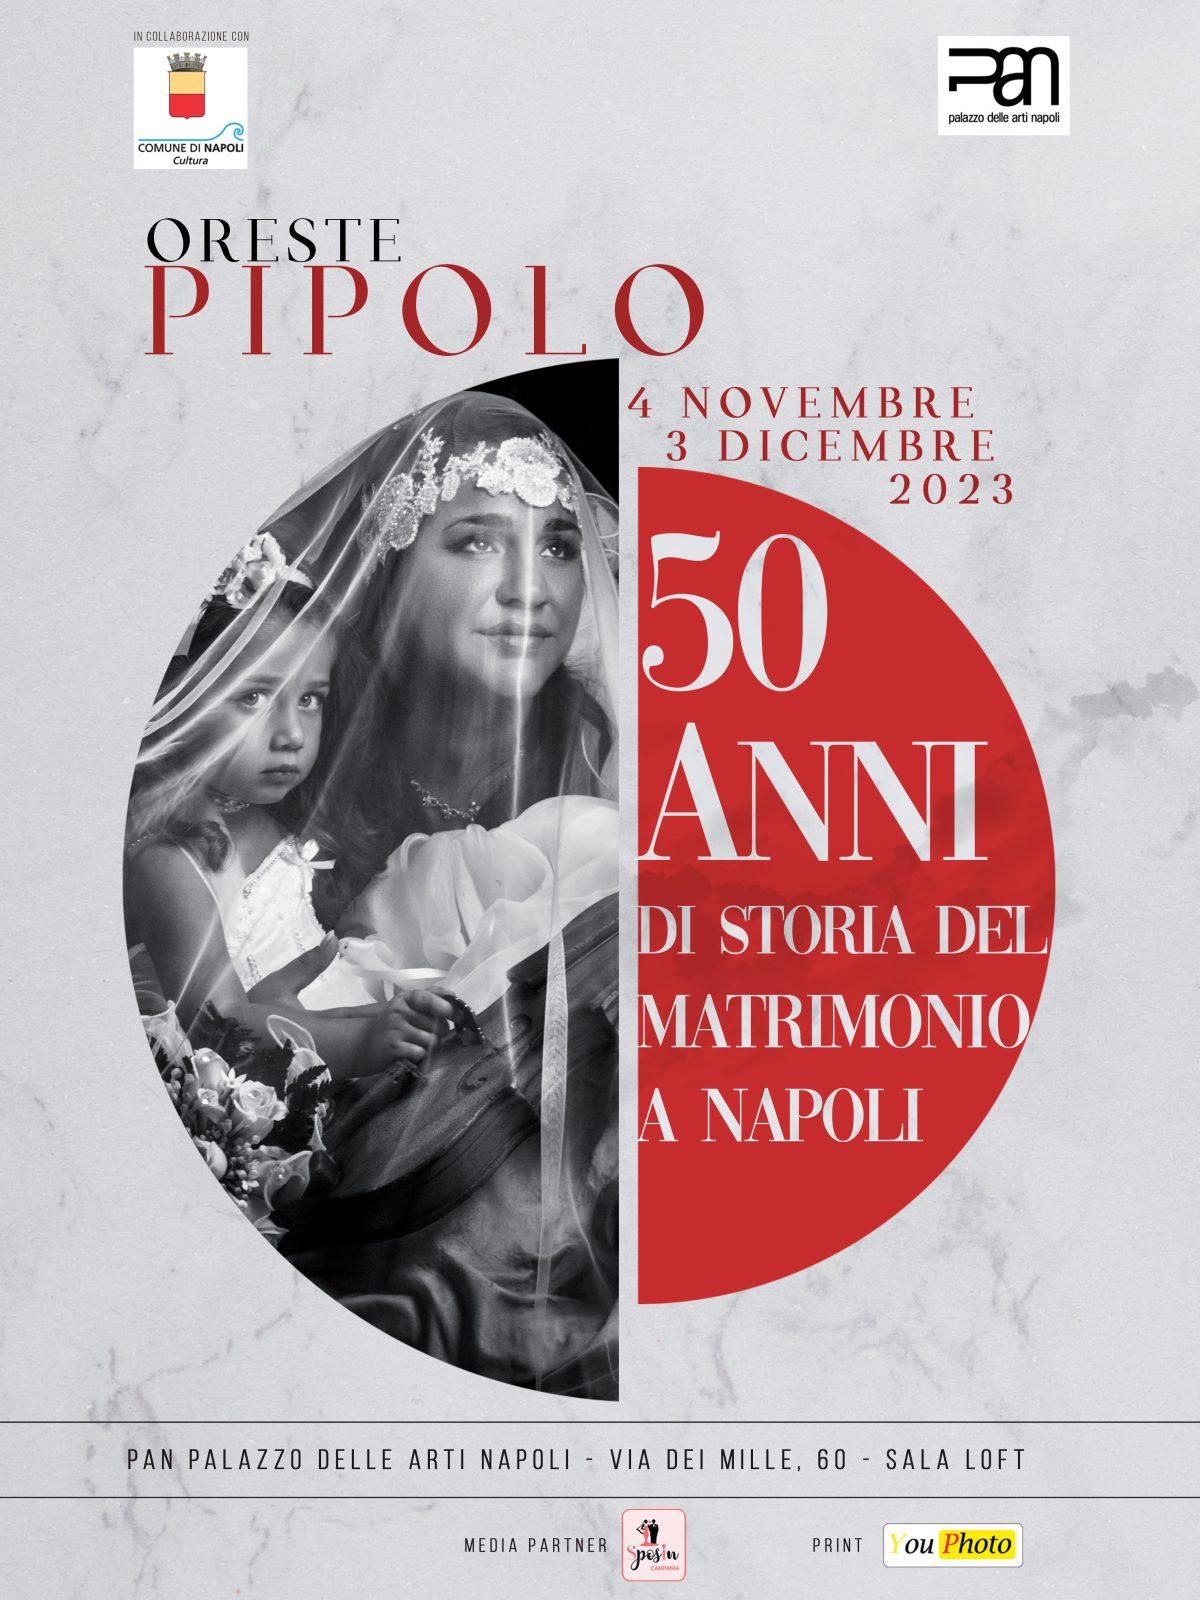 Pipolo: 50 anni di storia del matrimonio a Napoli